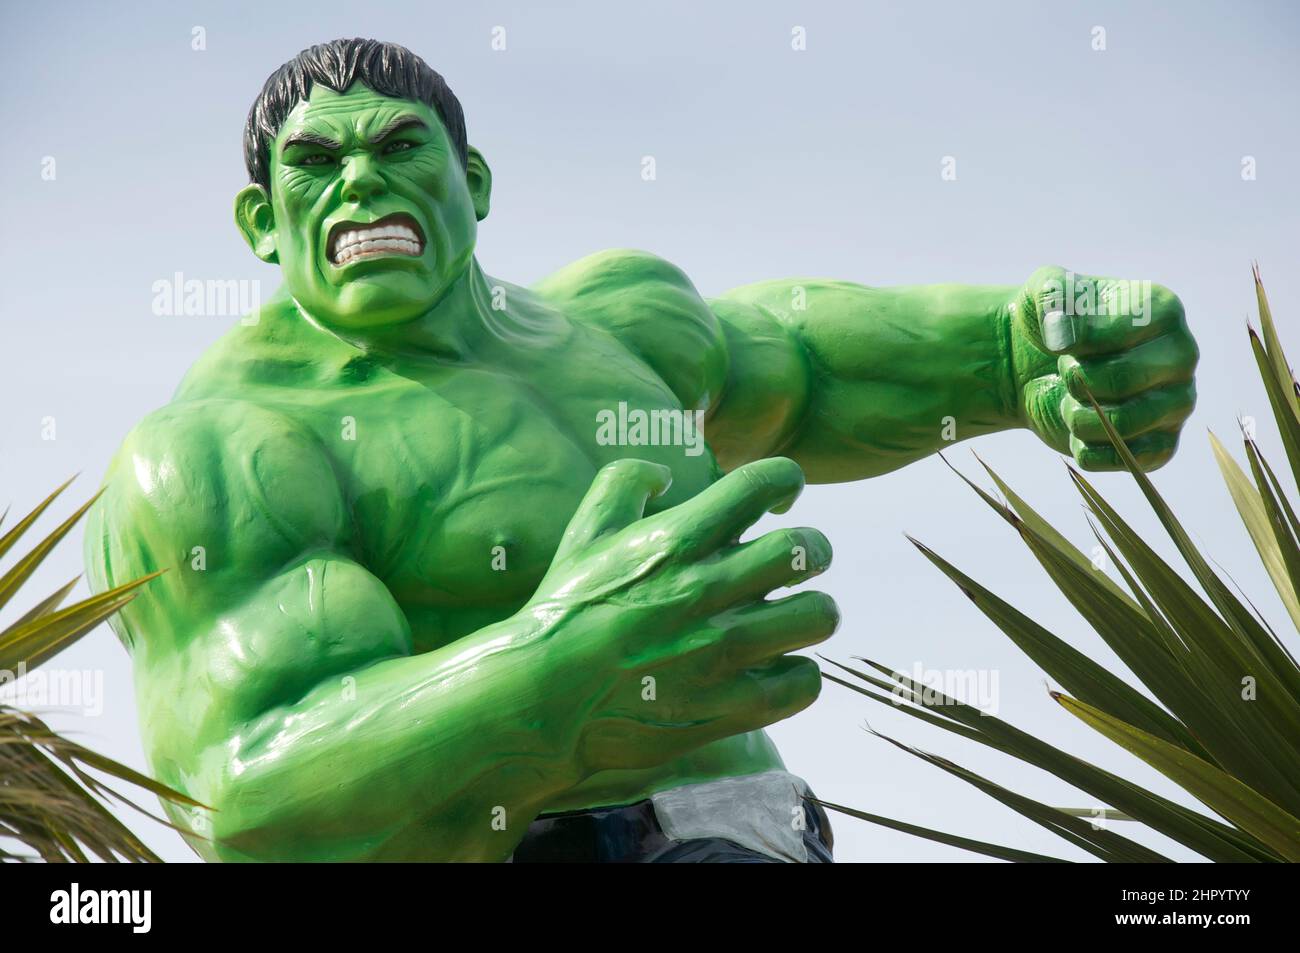 Hulk cartoon hi-res stock photography and images - Alamy